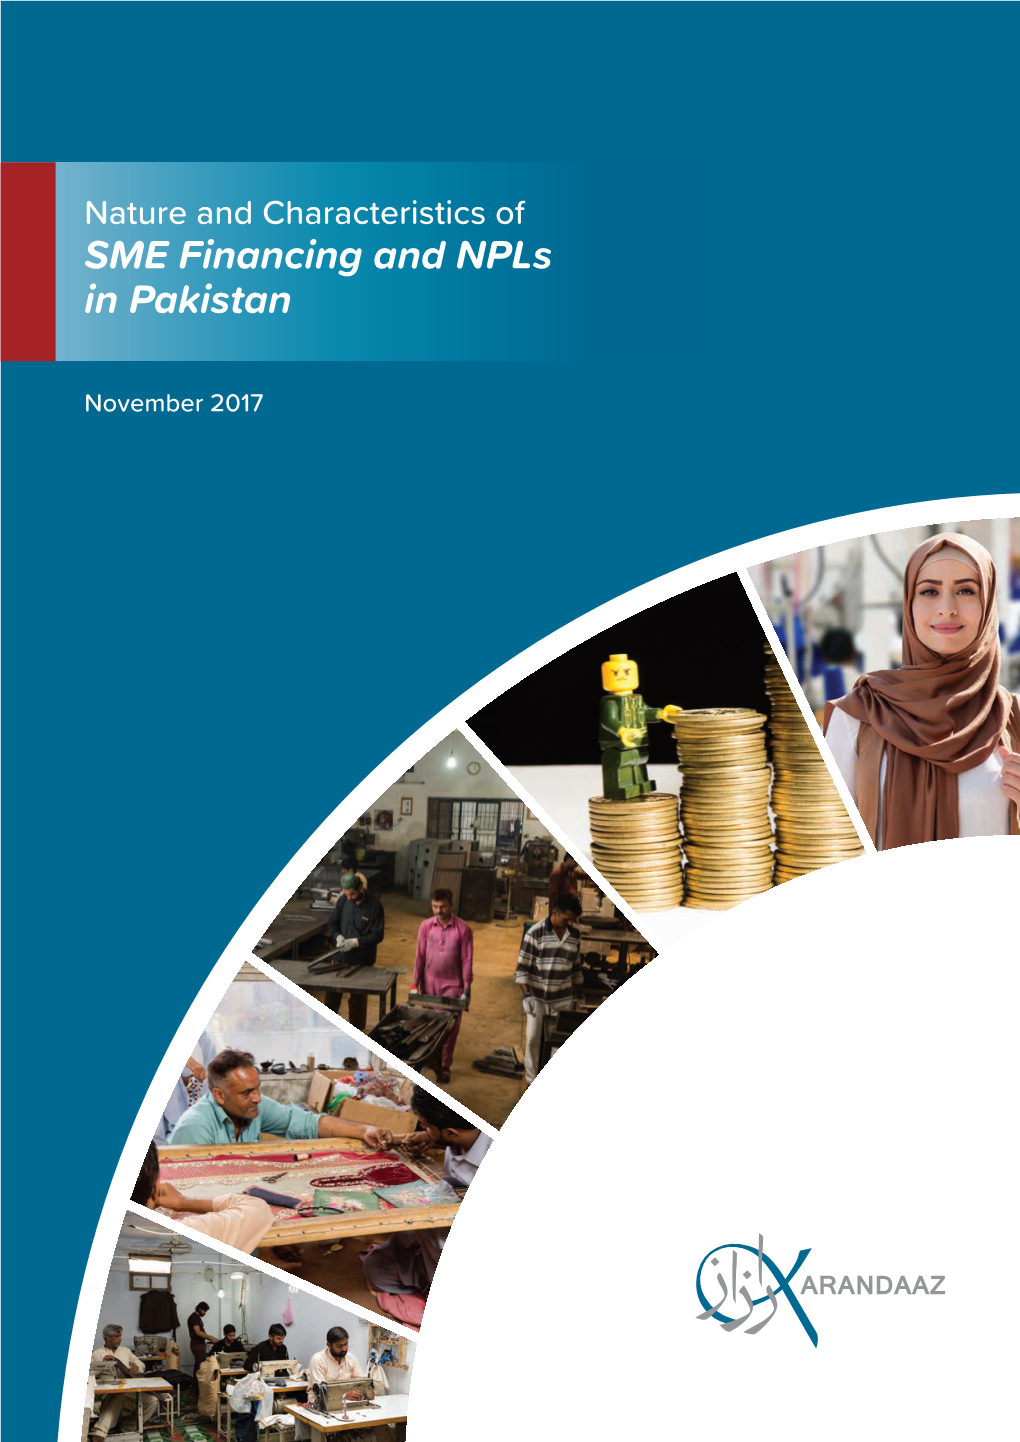 SME-NPL Report.Indd